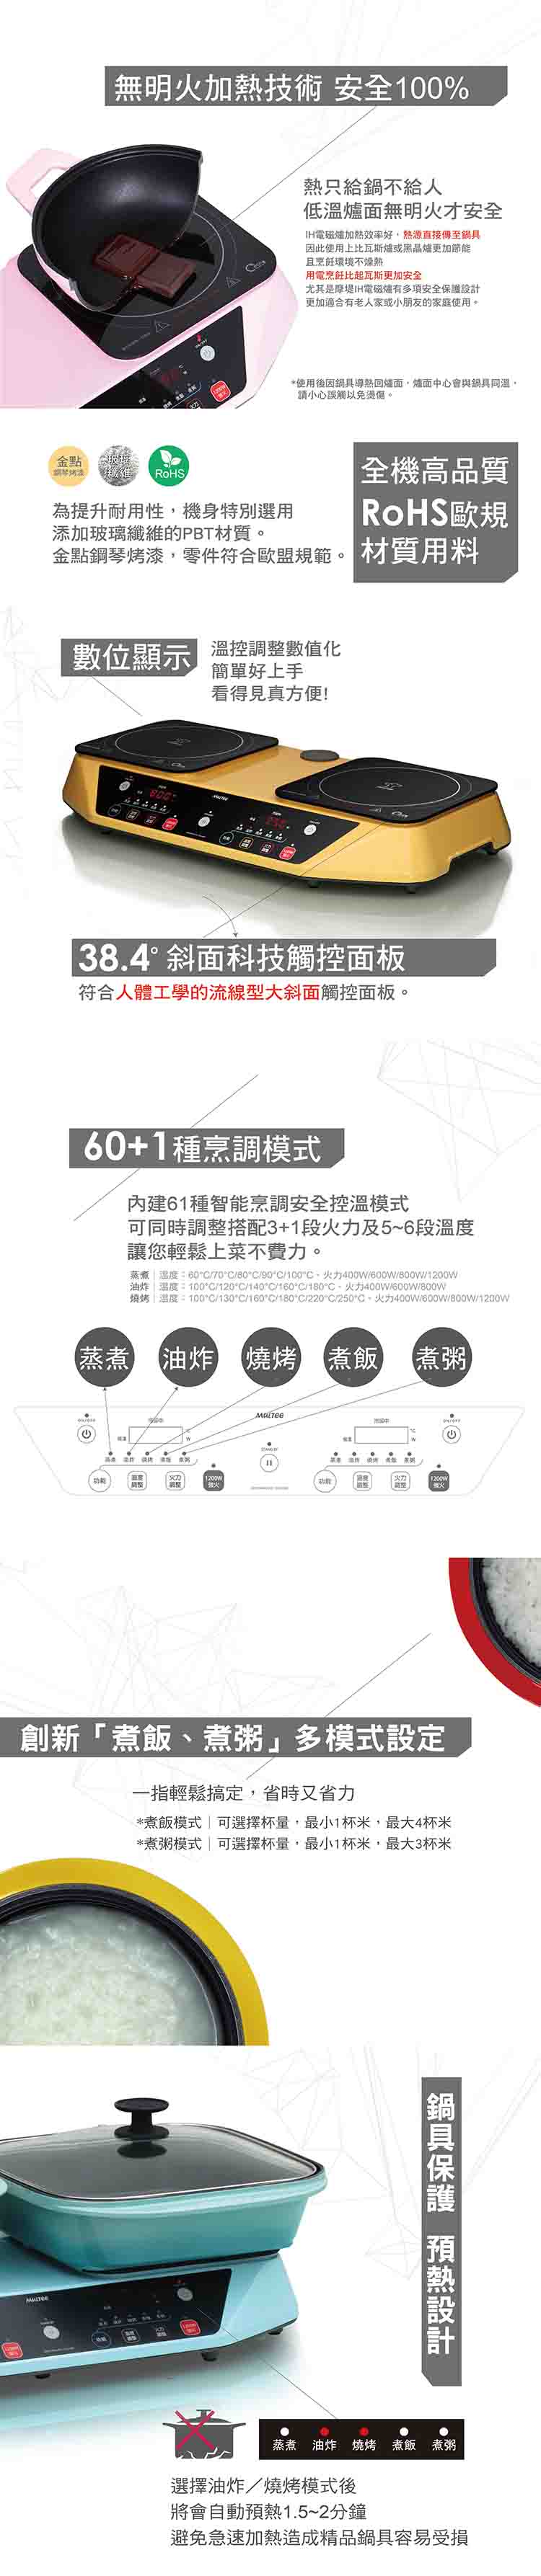 750-雙享爐網頁版-產品介紹+部落客 (3).jpg